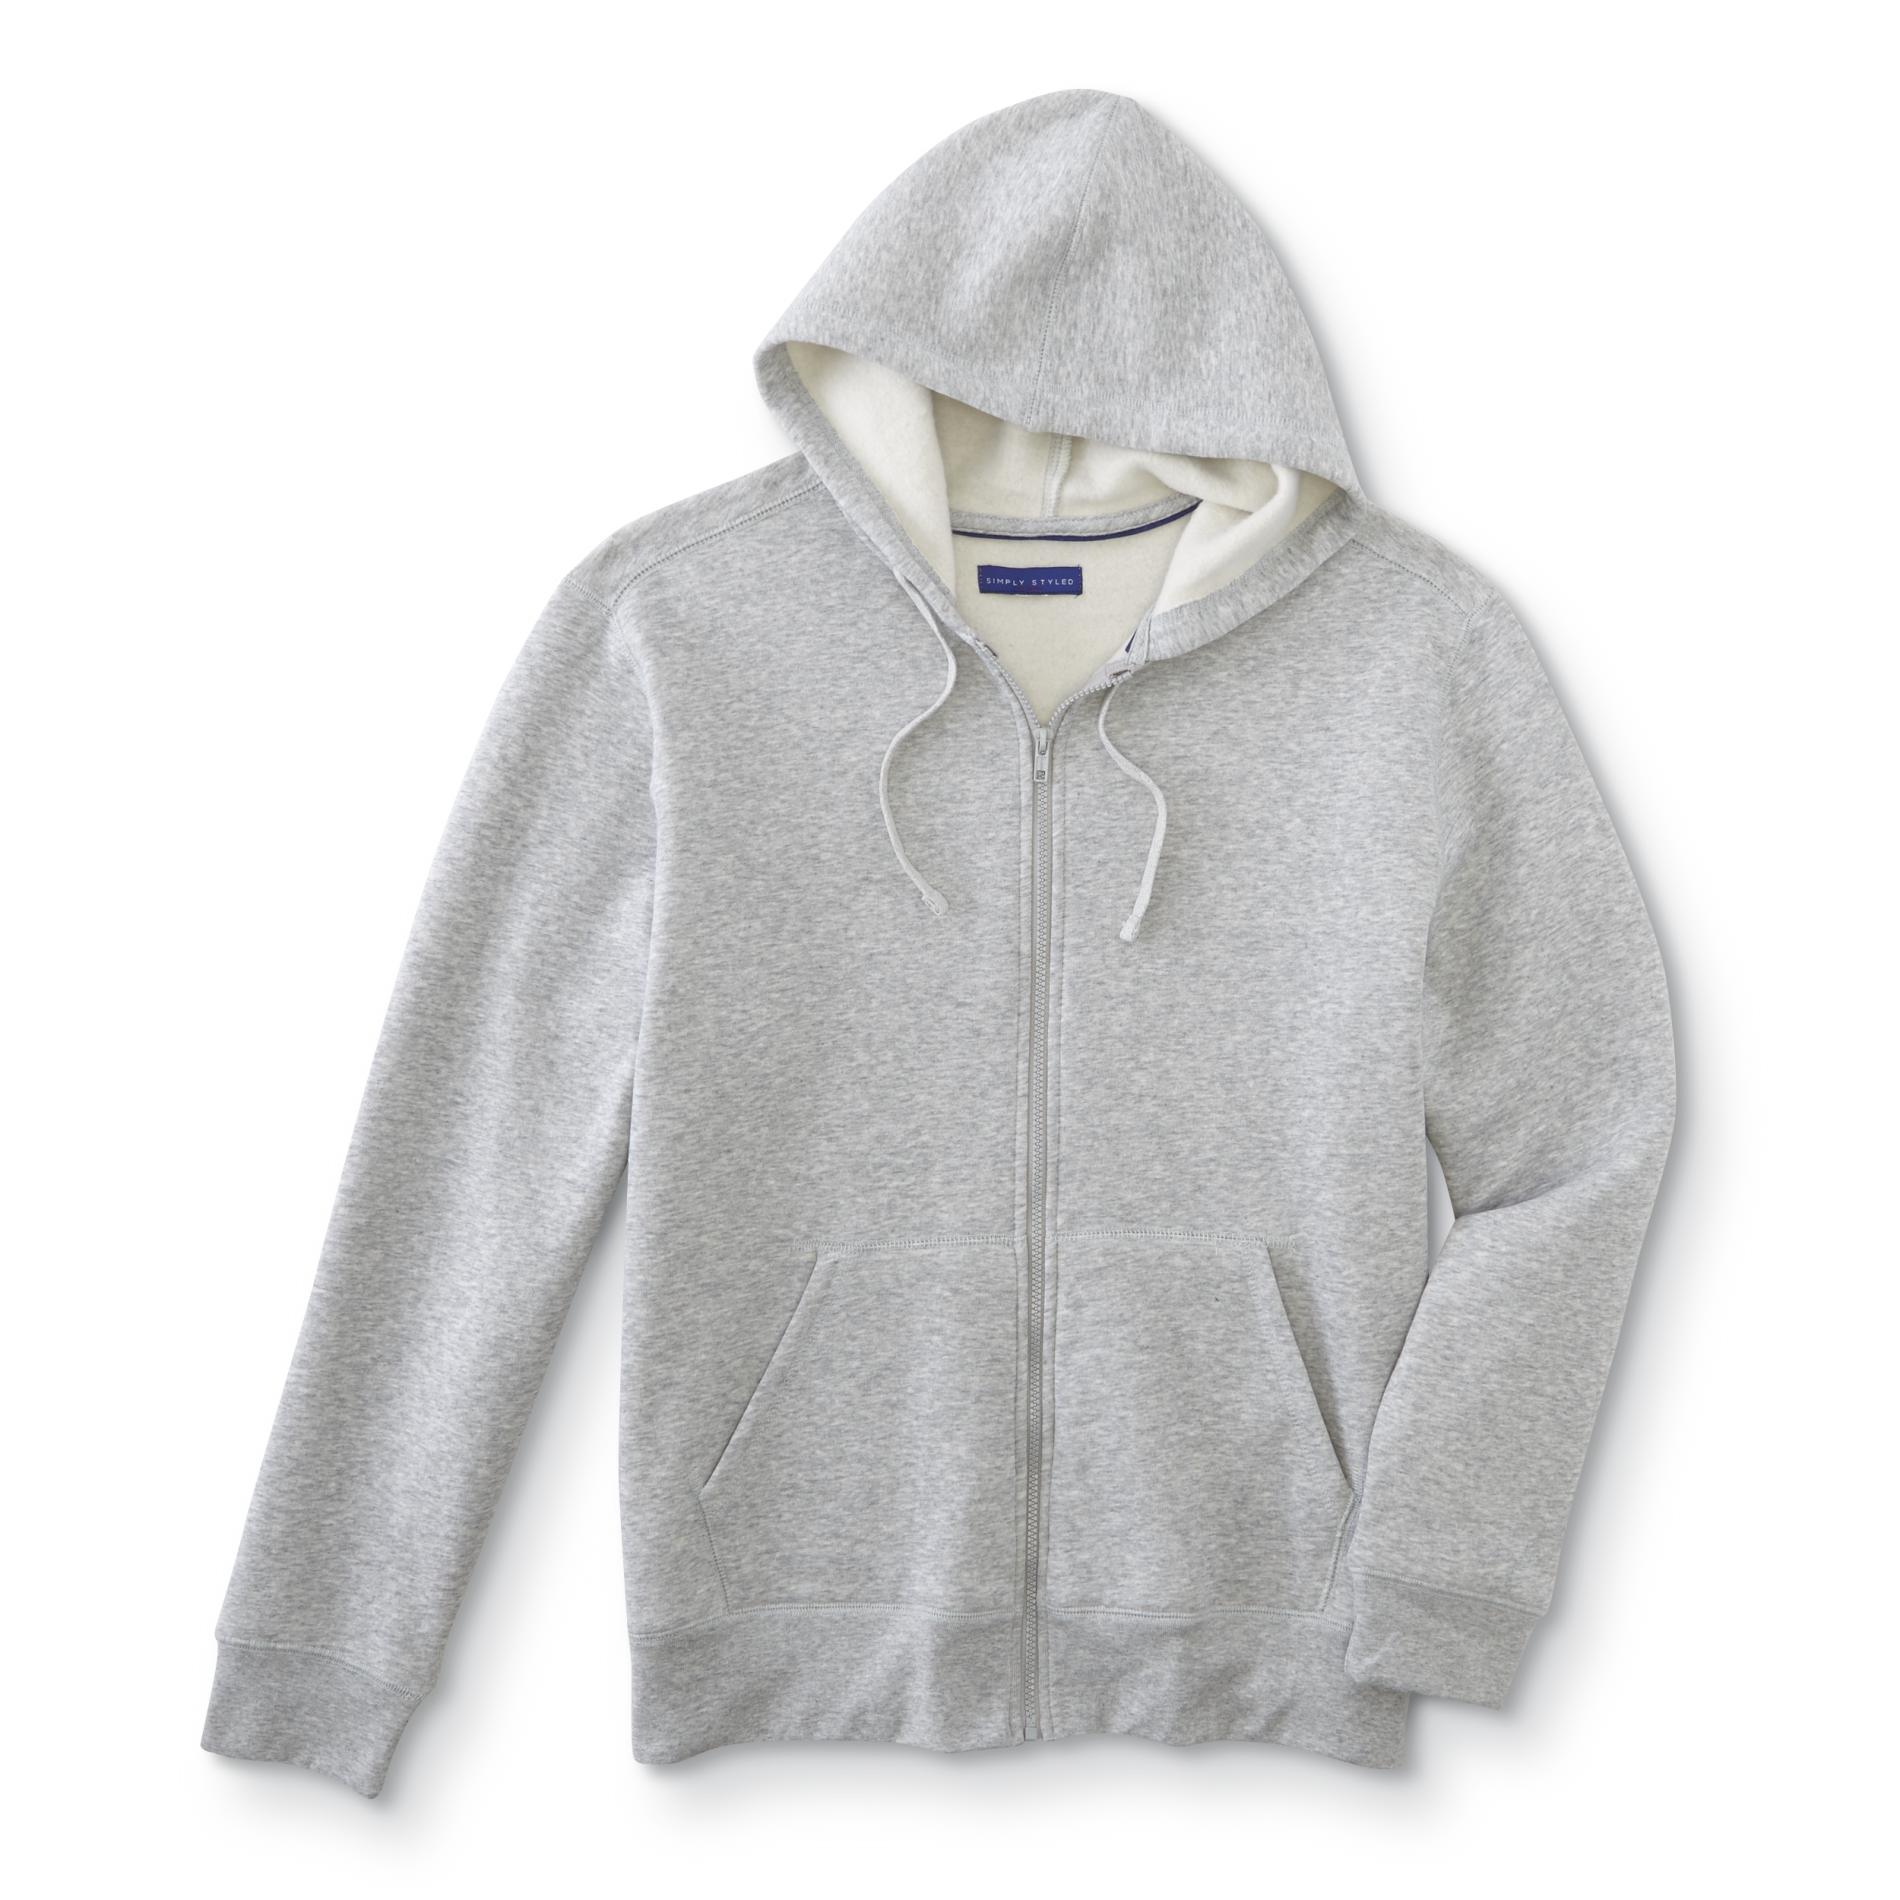 Simply Styled Men's Fleece Hoodie Jacket | Shop Your Way: Online ...